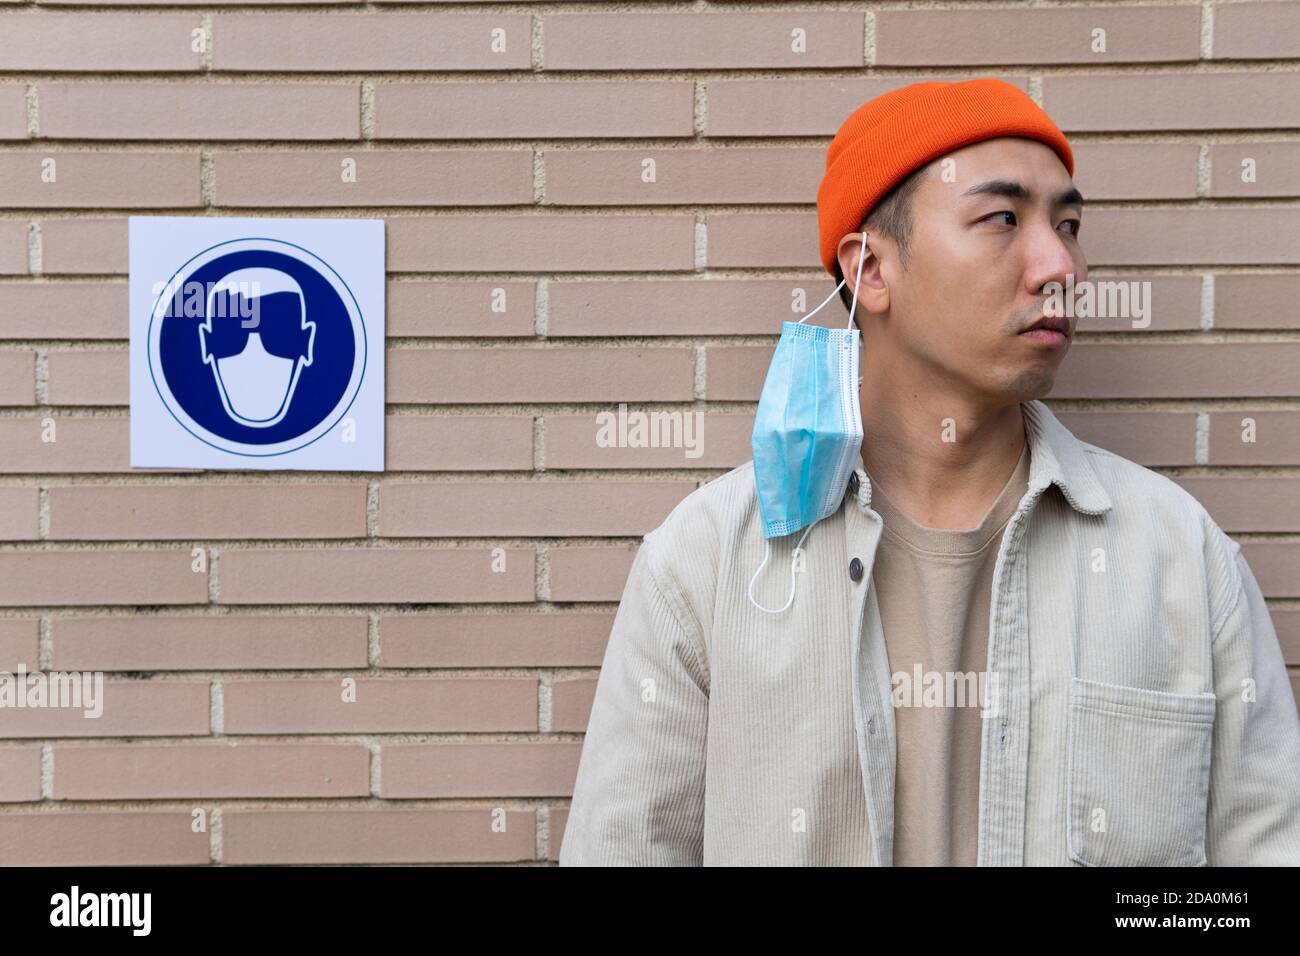 Ernsthafte asiatische männliche Bremsregel, indem sie aus Maske stehen In der Nähe Schild in Gebäudewand illustrieren Person in Schutzmaske Stockfoto